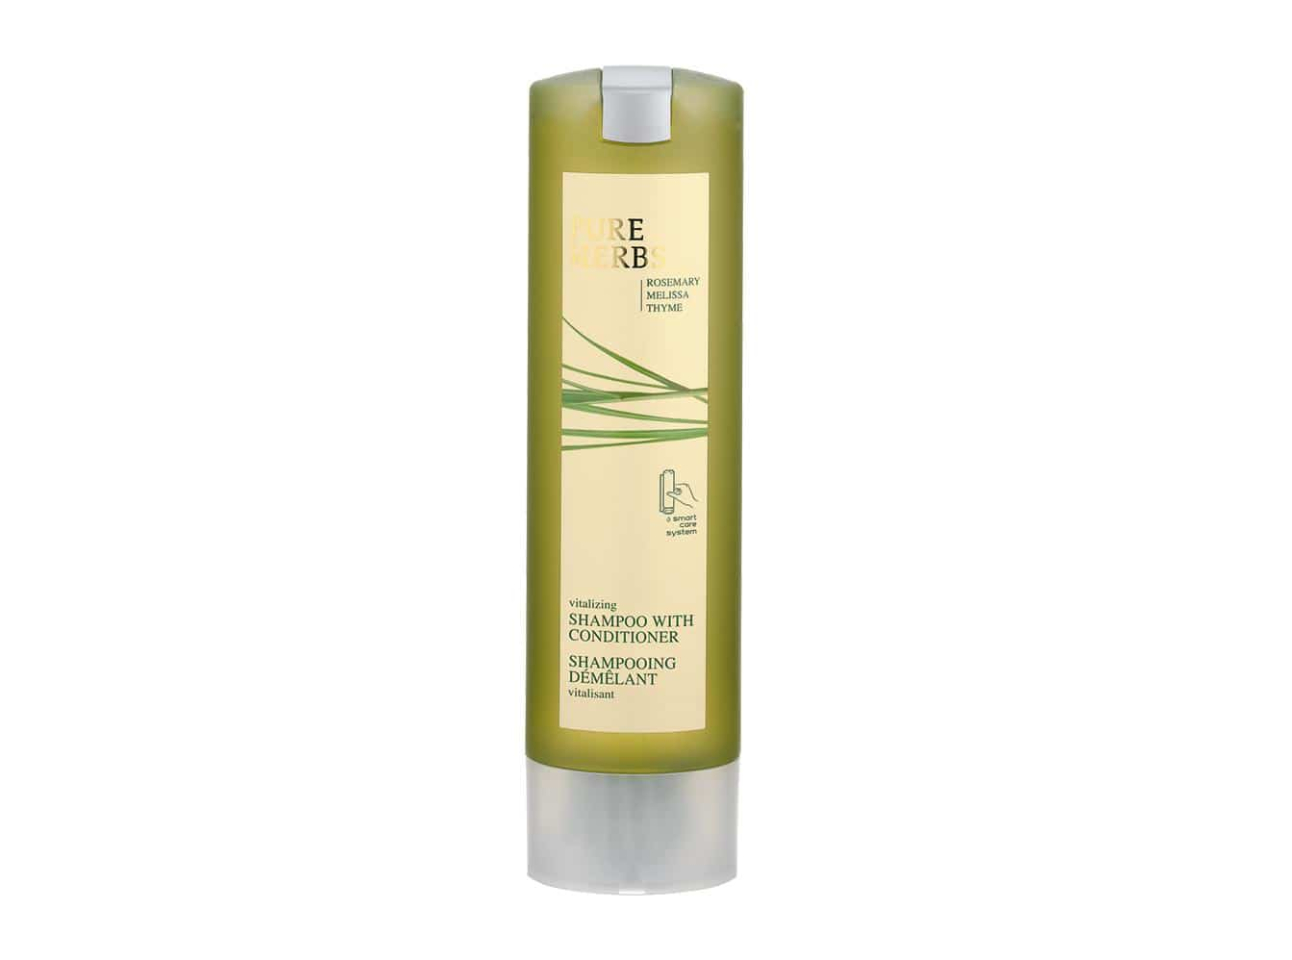 Pure Herbs - Shampoo mit Conditioner, 300 ml, Smart Care